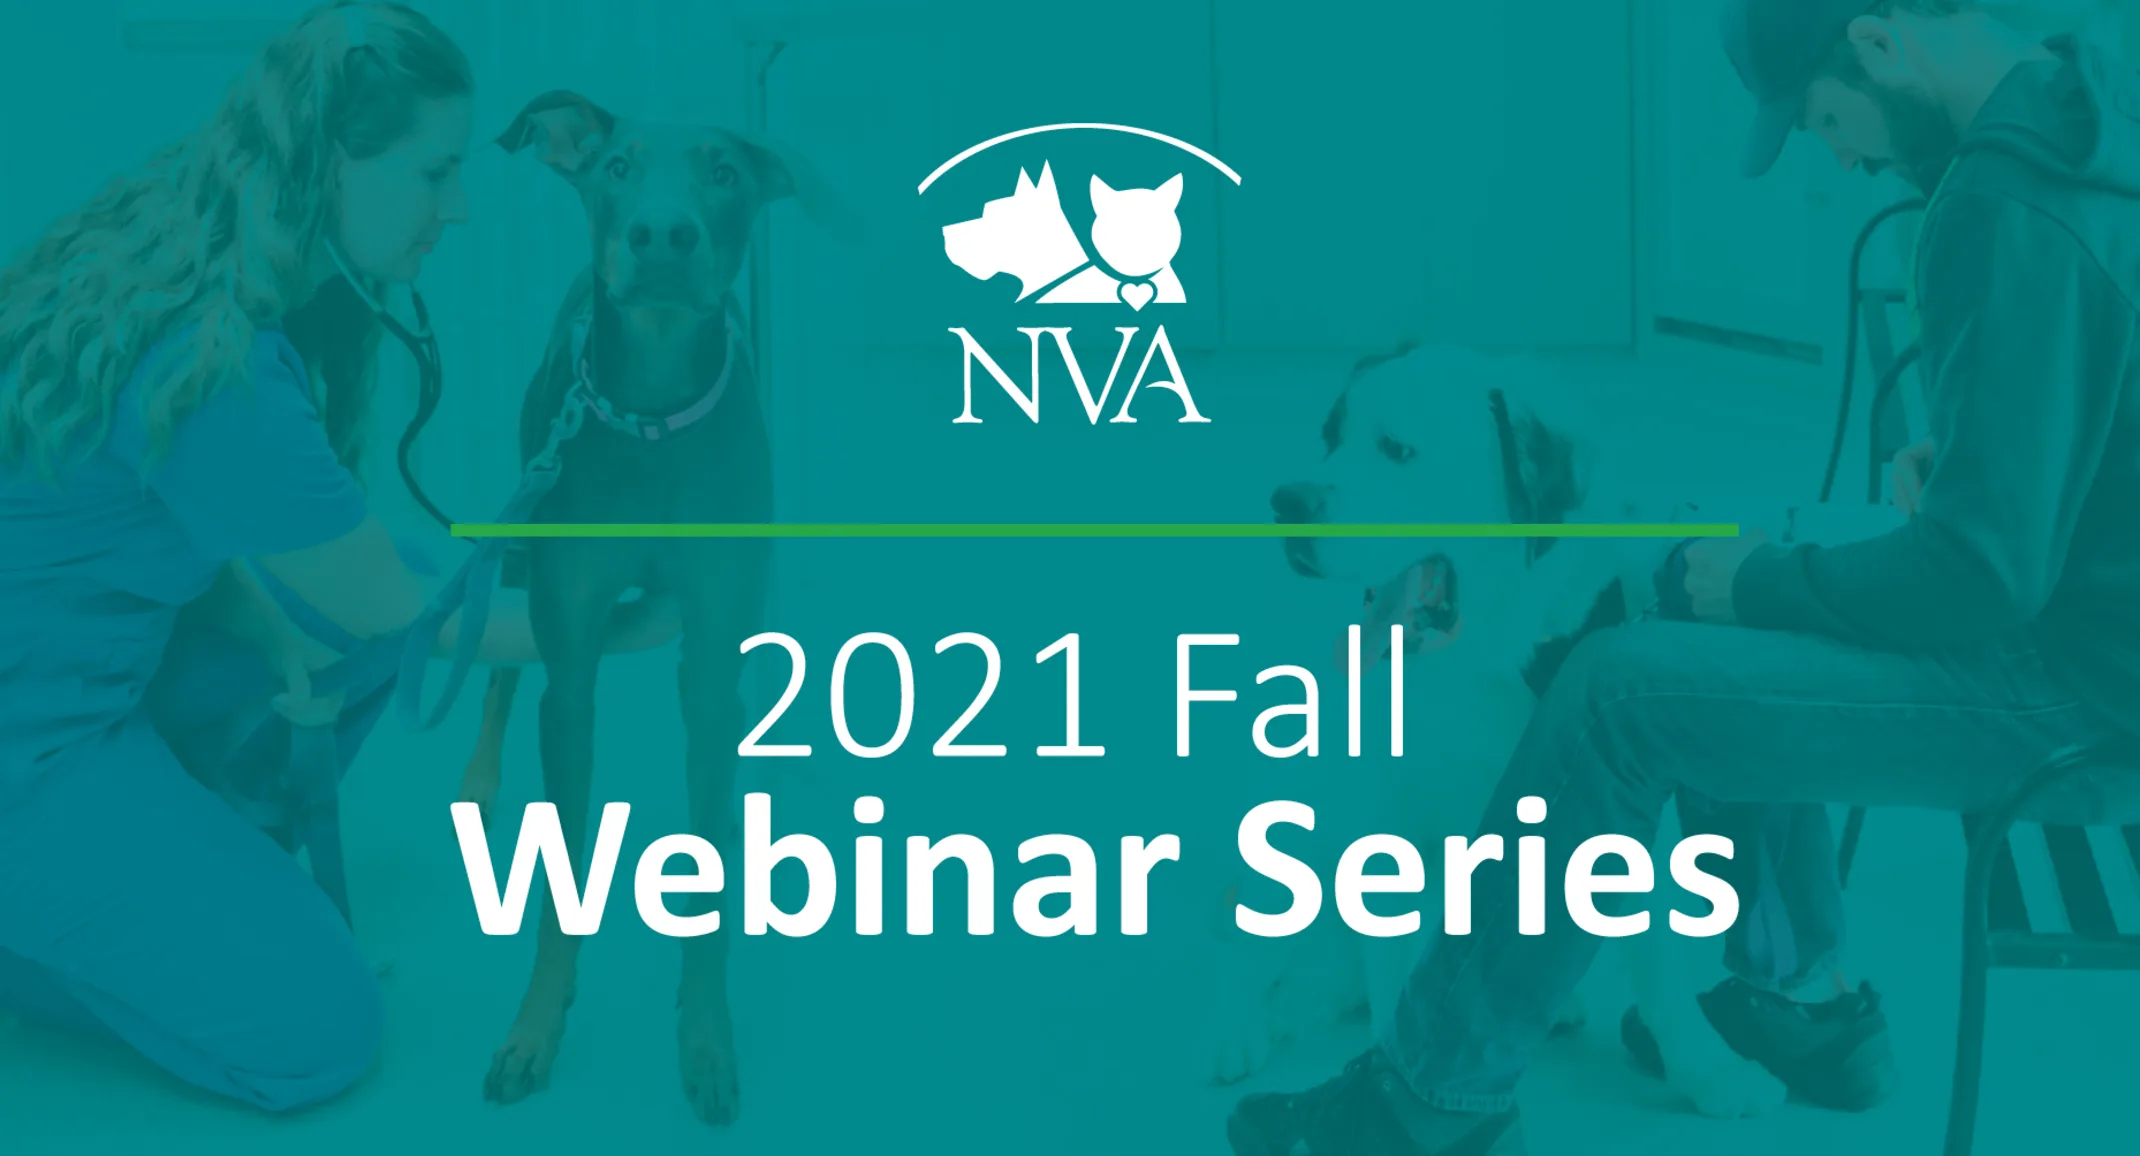 NVA - 2021 Fall Webinar Series